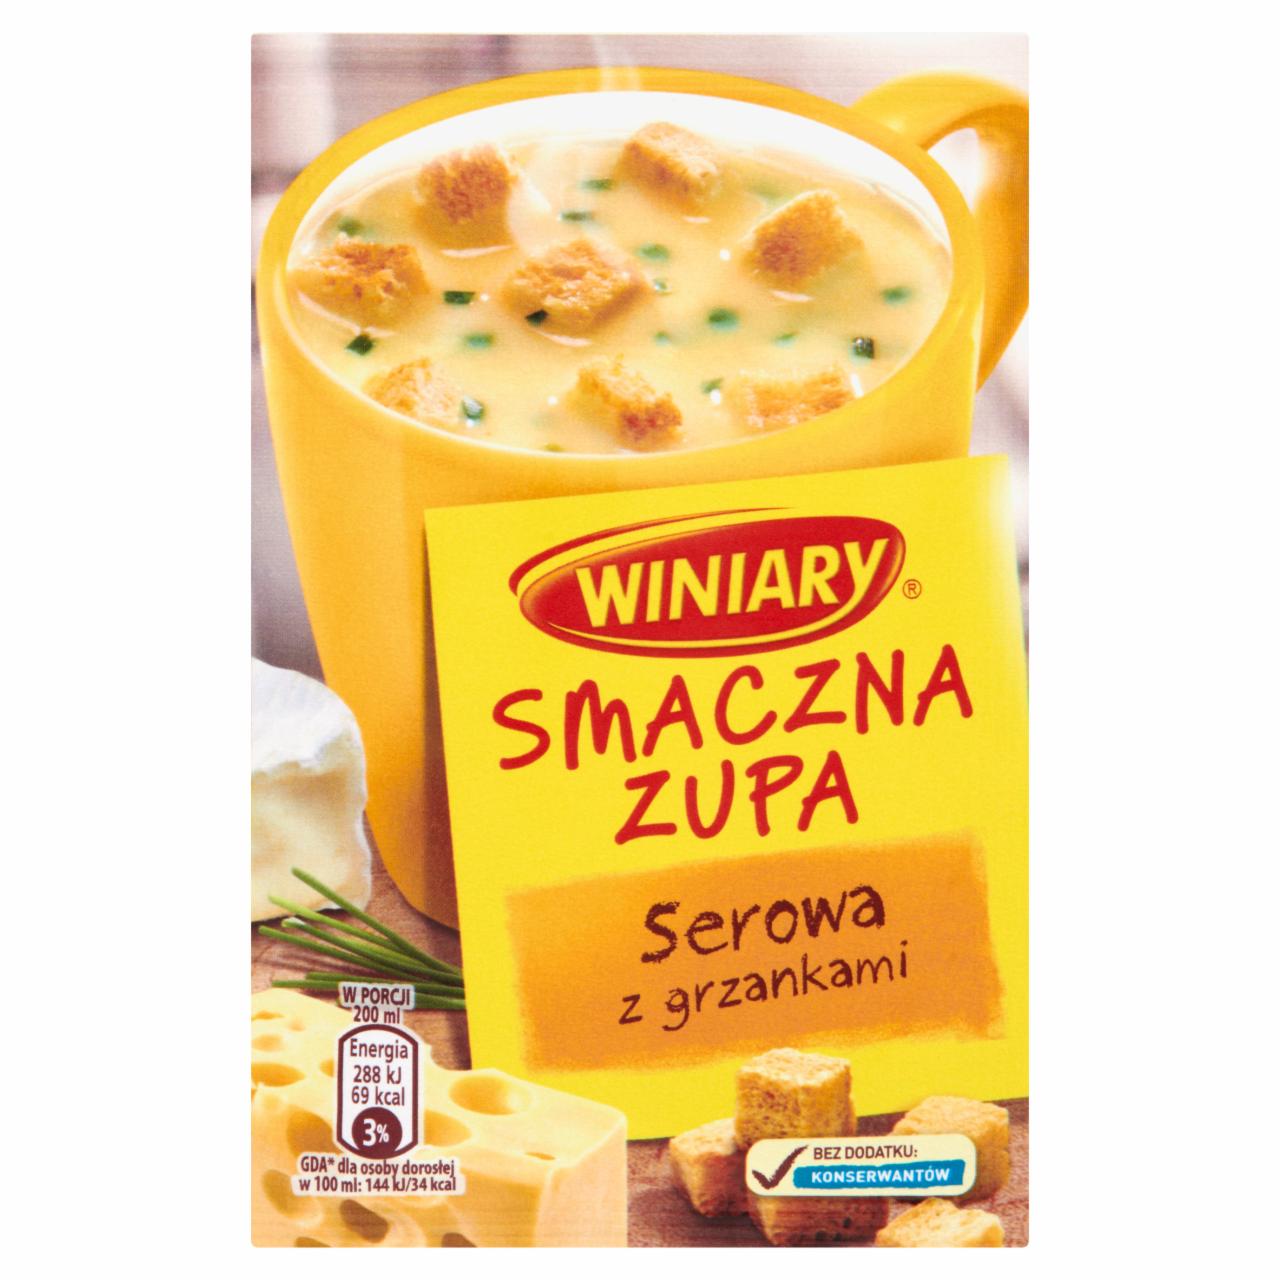 Zdjęcia - Winiary Smaczna zupa Serowa z grzankami 16 g